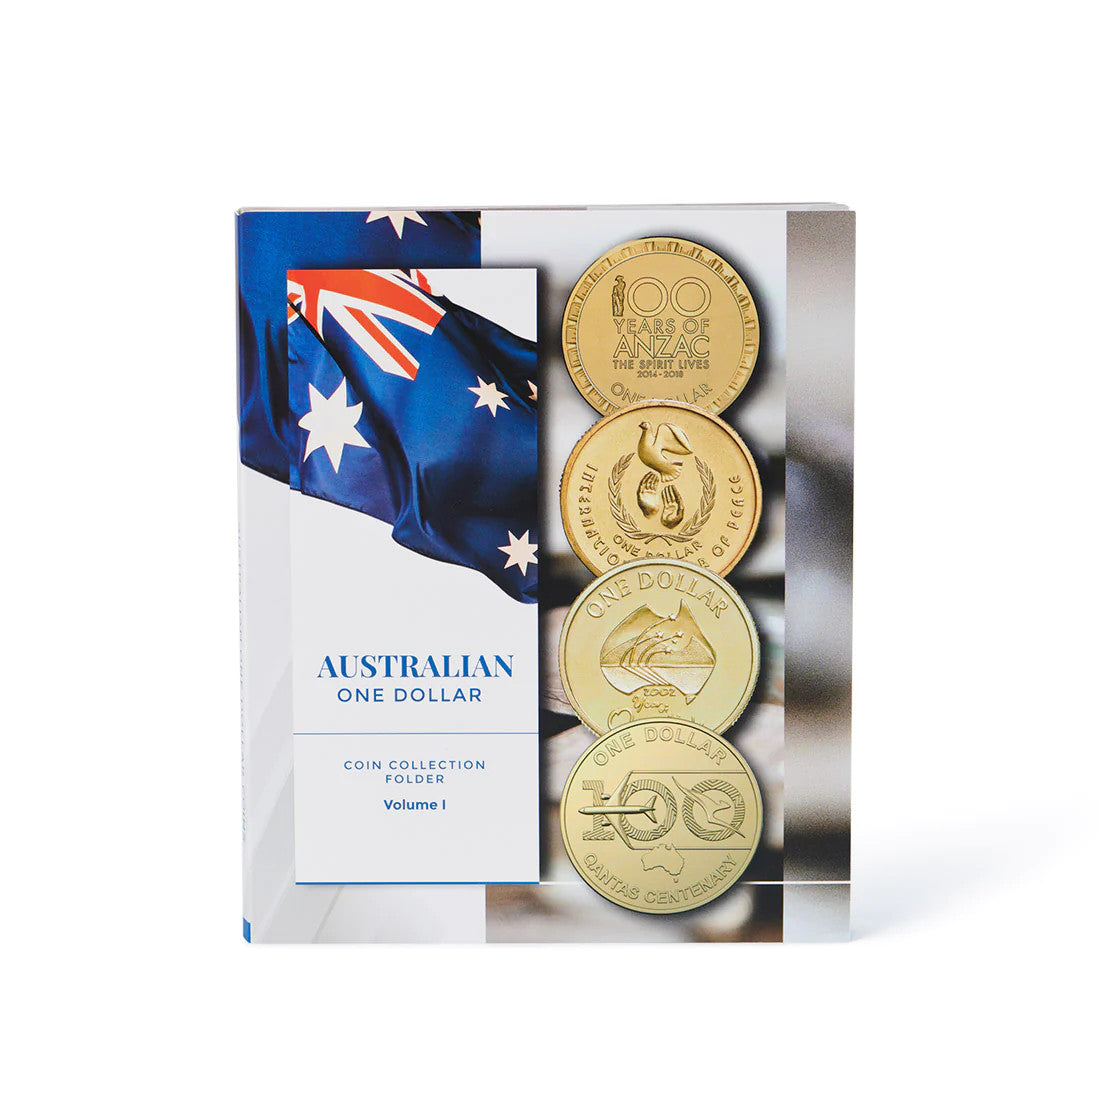 Australian $1 Coin Collection Folder